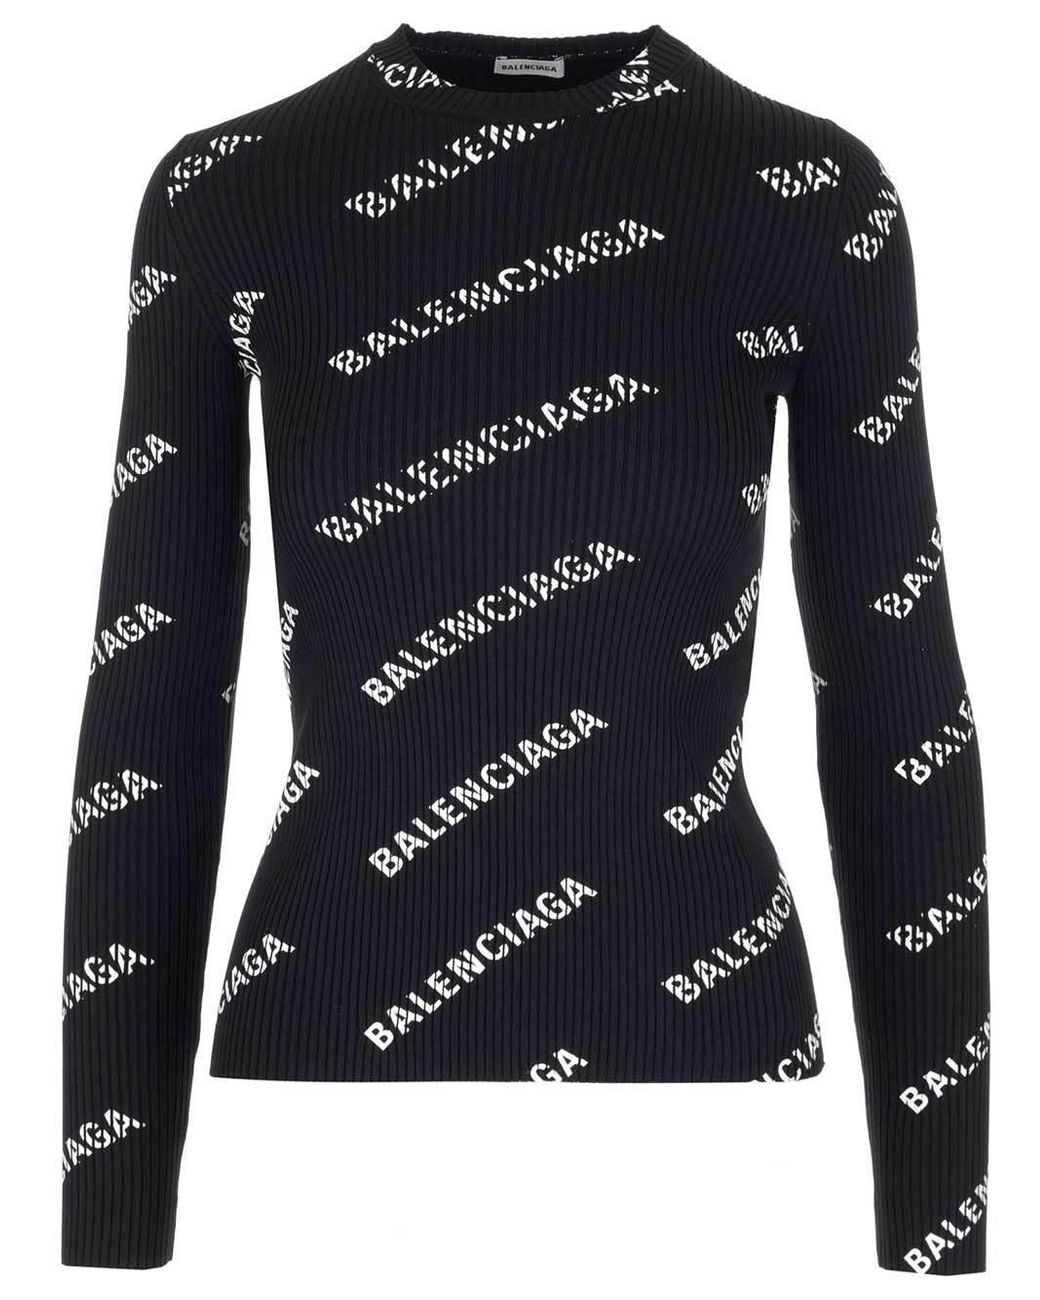 Balenciaga All Over Logo Long-sleeve Top in Black | Lyst